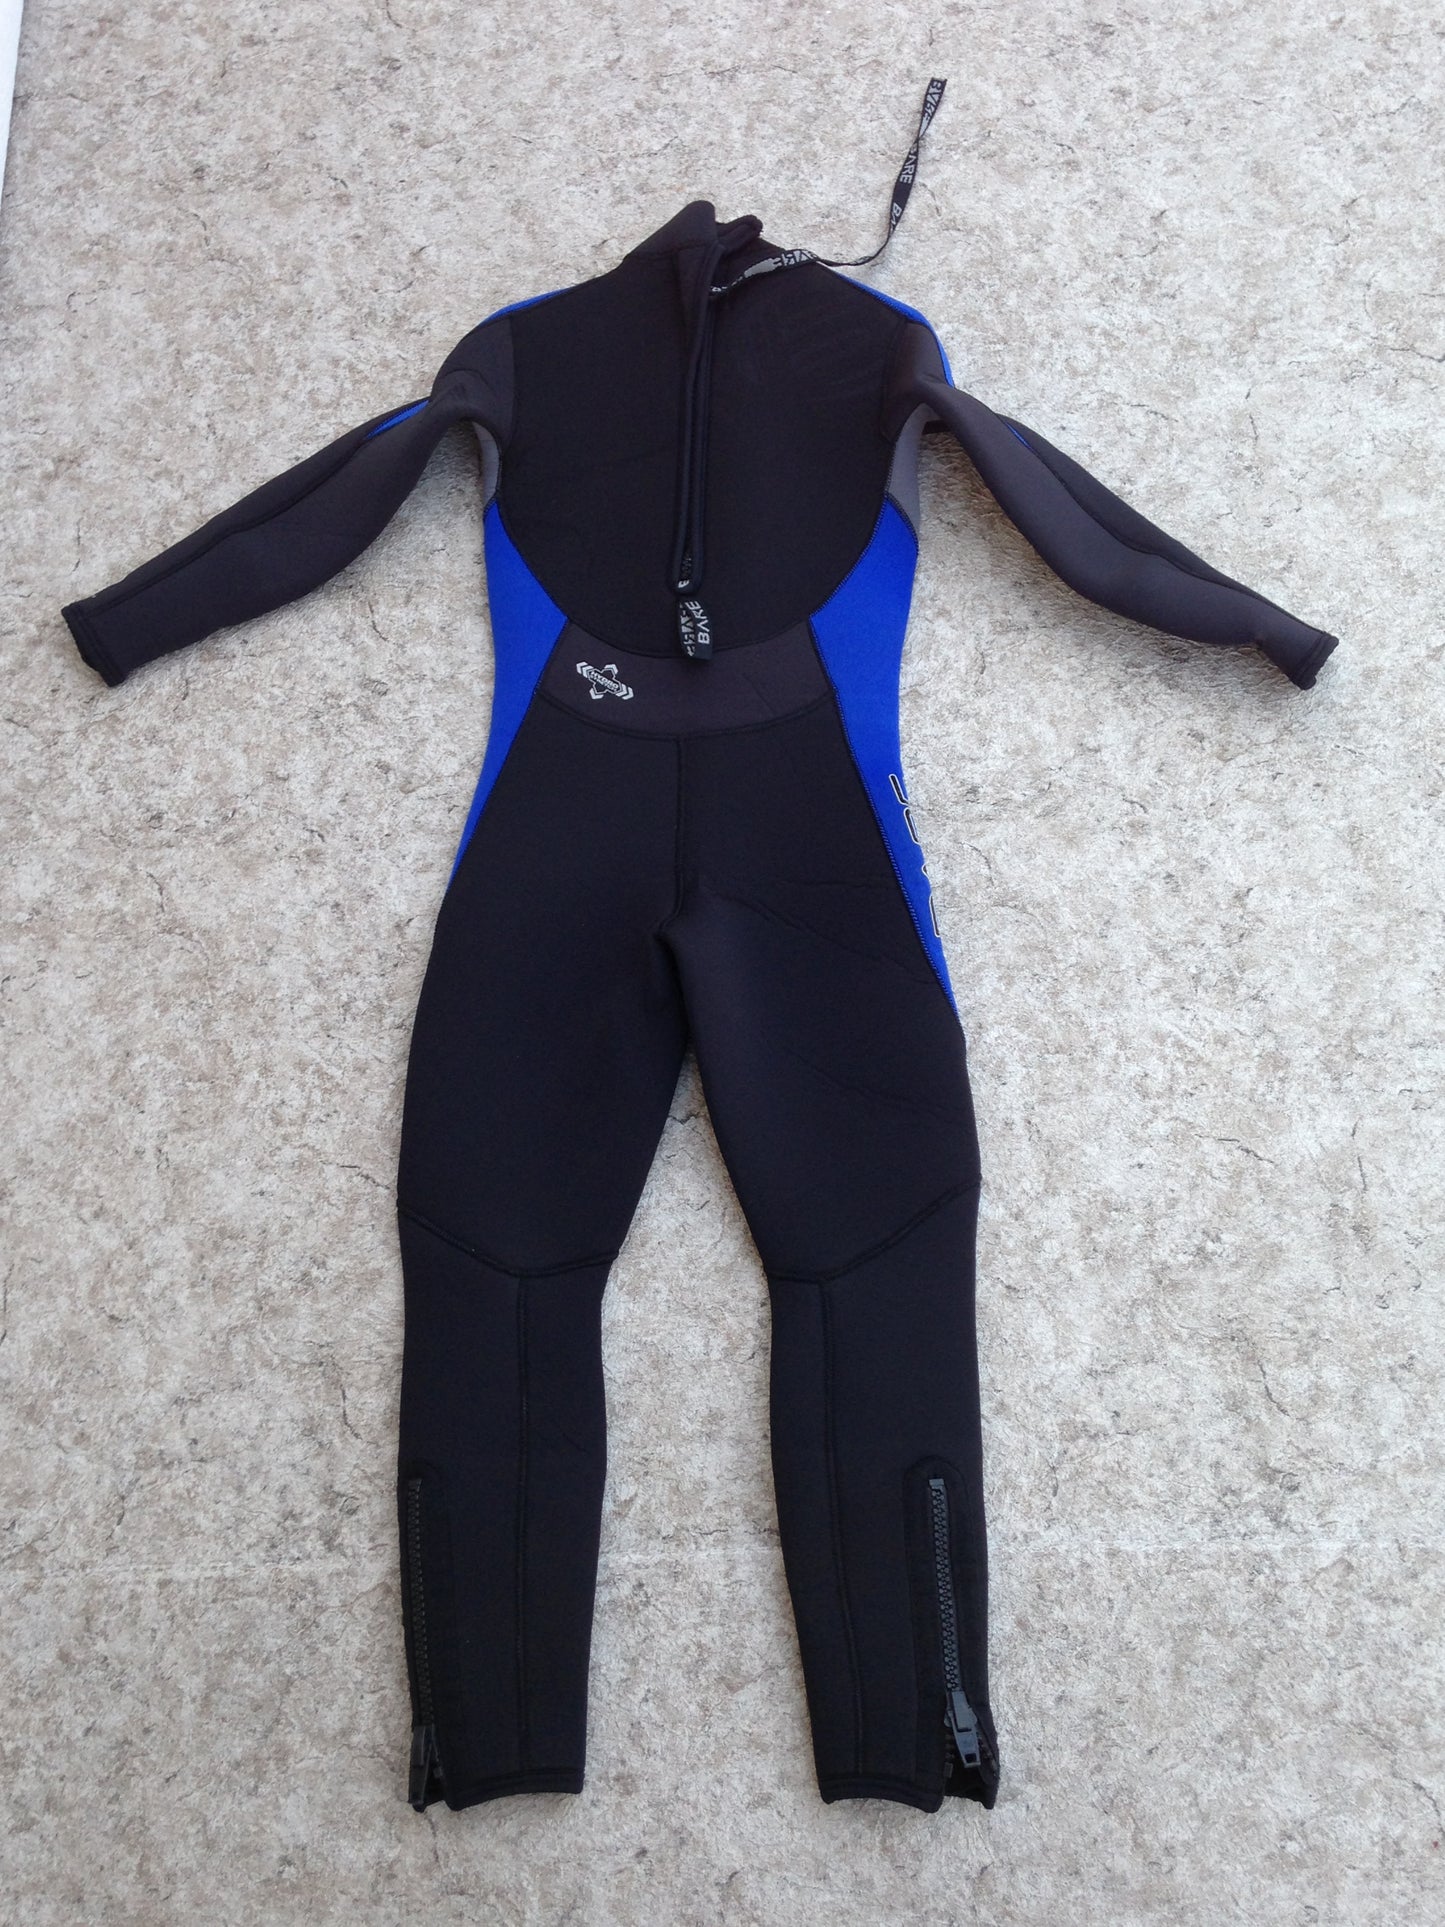 Wetsuit Child Size 10 Full Bare 4-3 mm Neoprene Black Blue Surf Ski